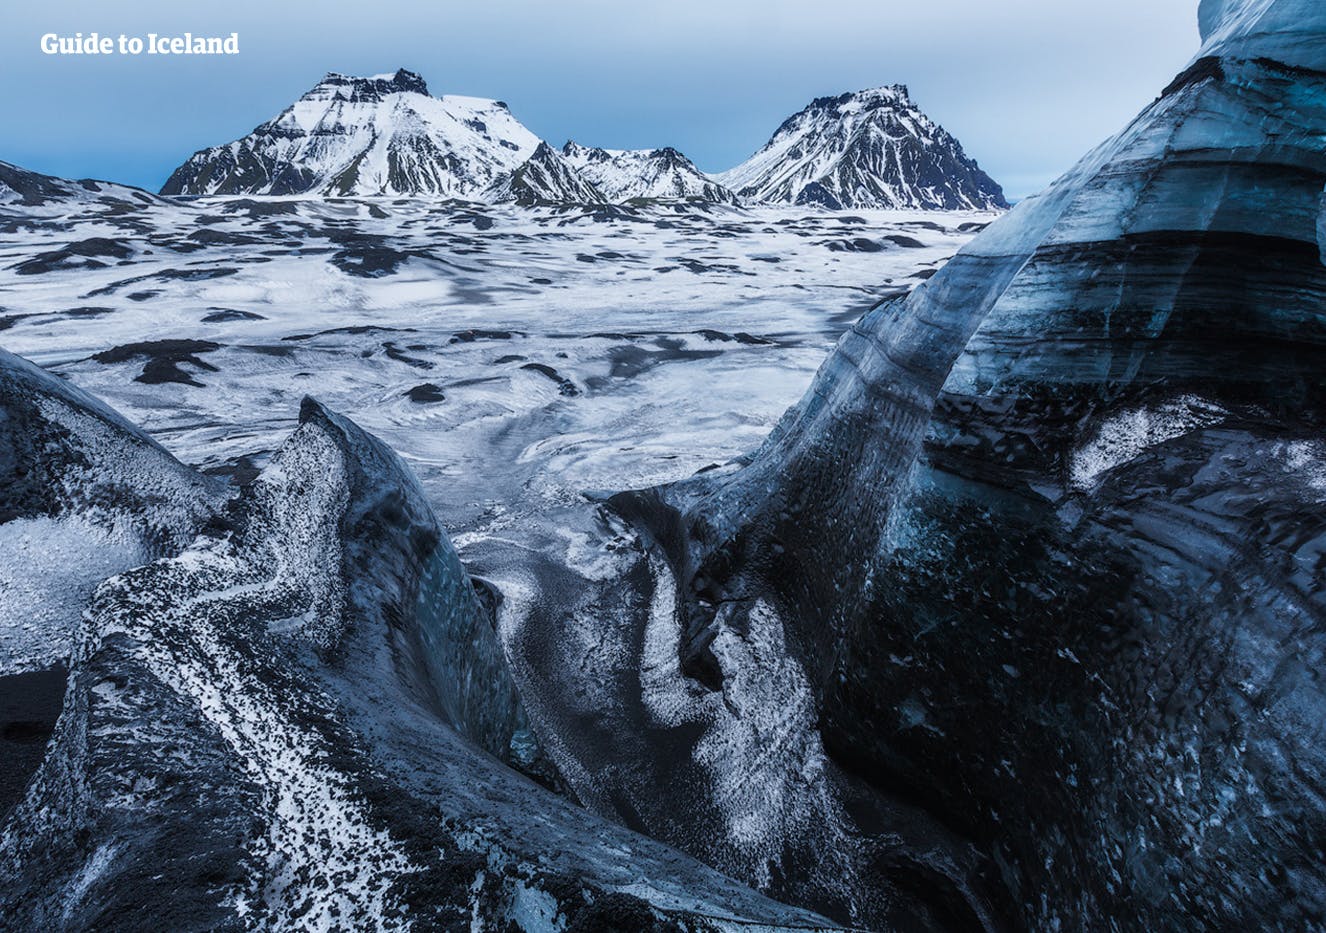 Szczyty lodowca Mýrdalsjökull pokryte są czarnym popiołem z poprzednich erupcji wulkanicznych.